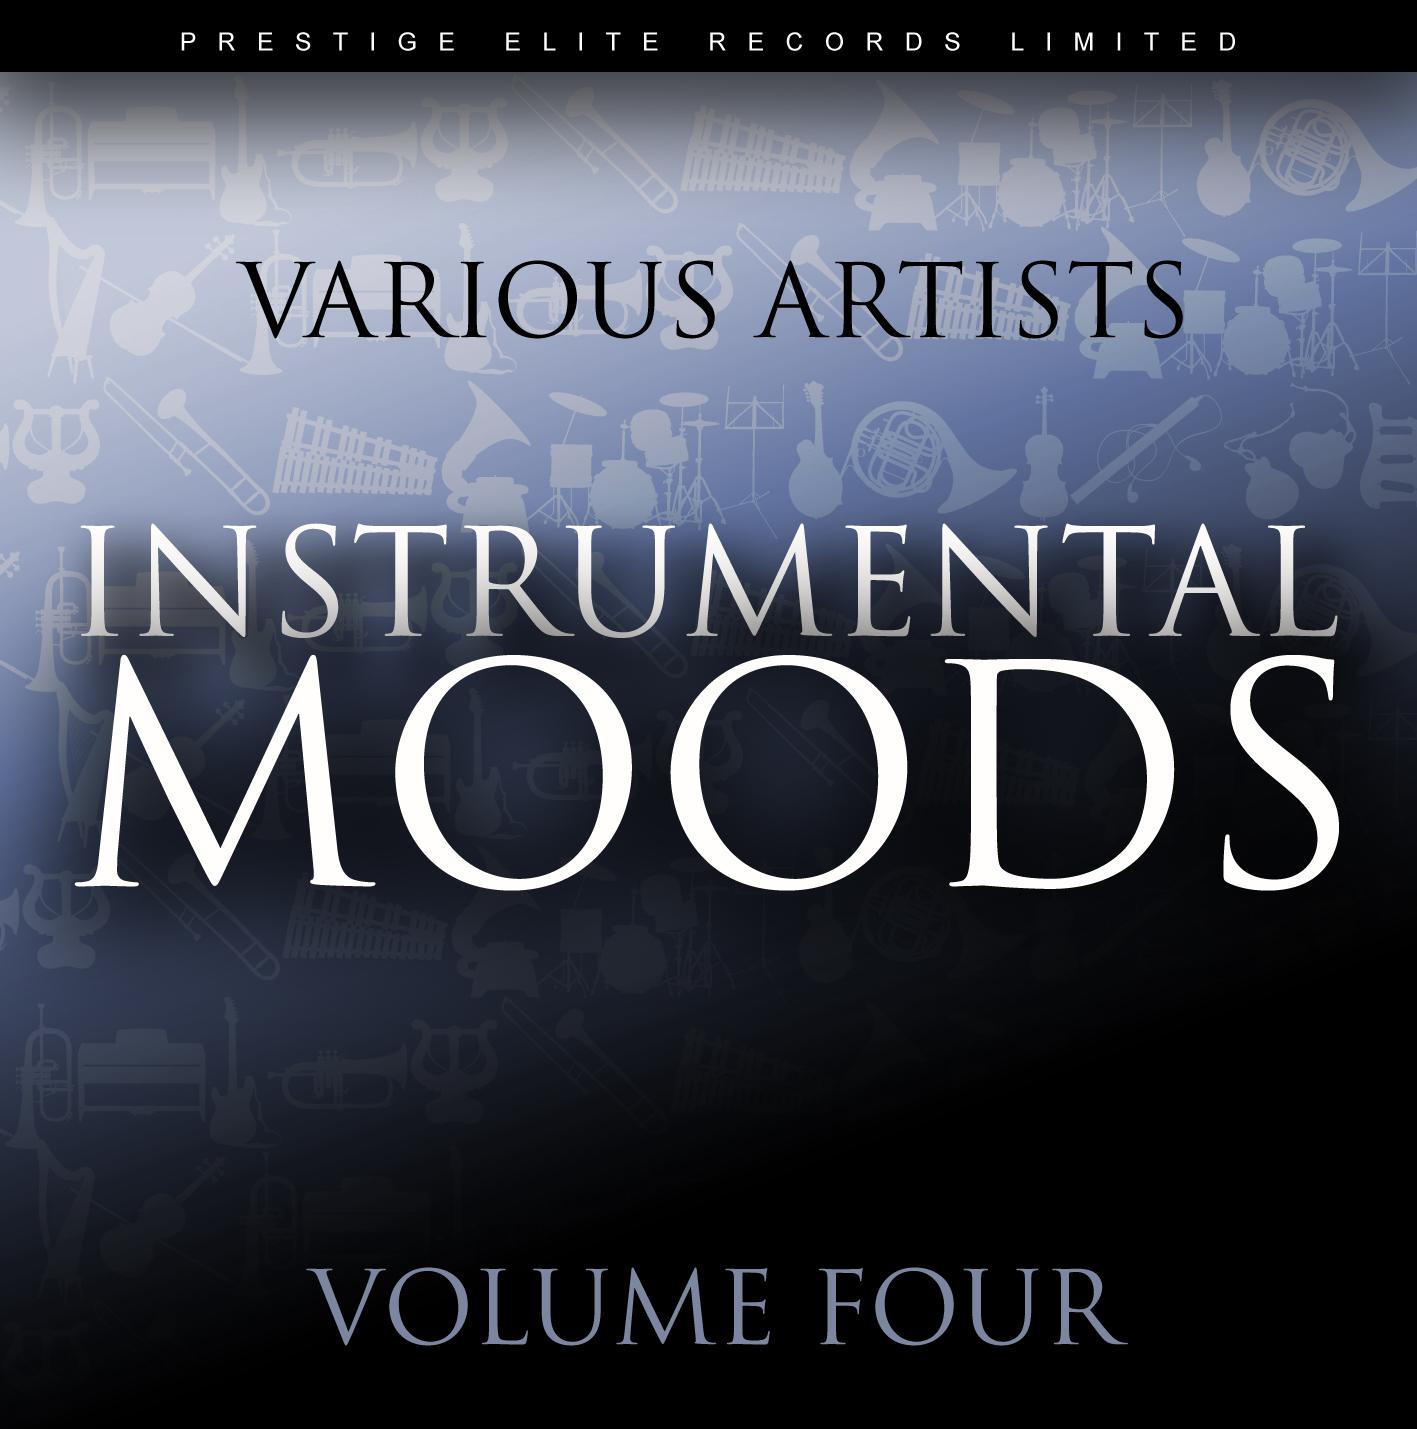 Instrumental Moods Vol 4